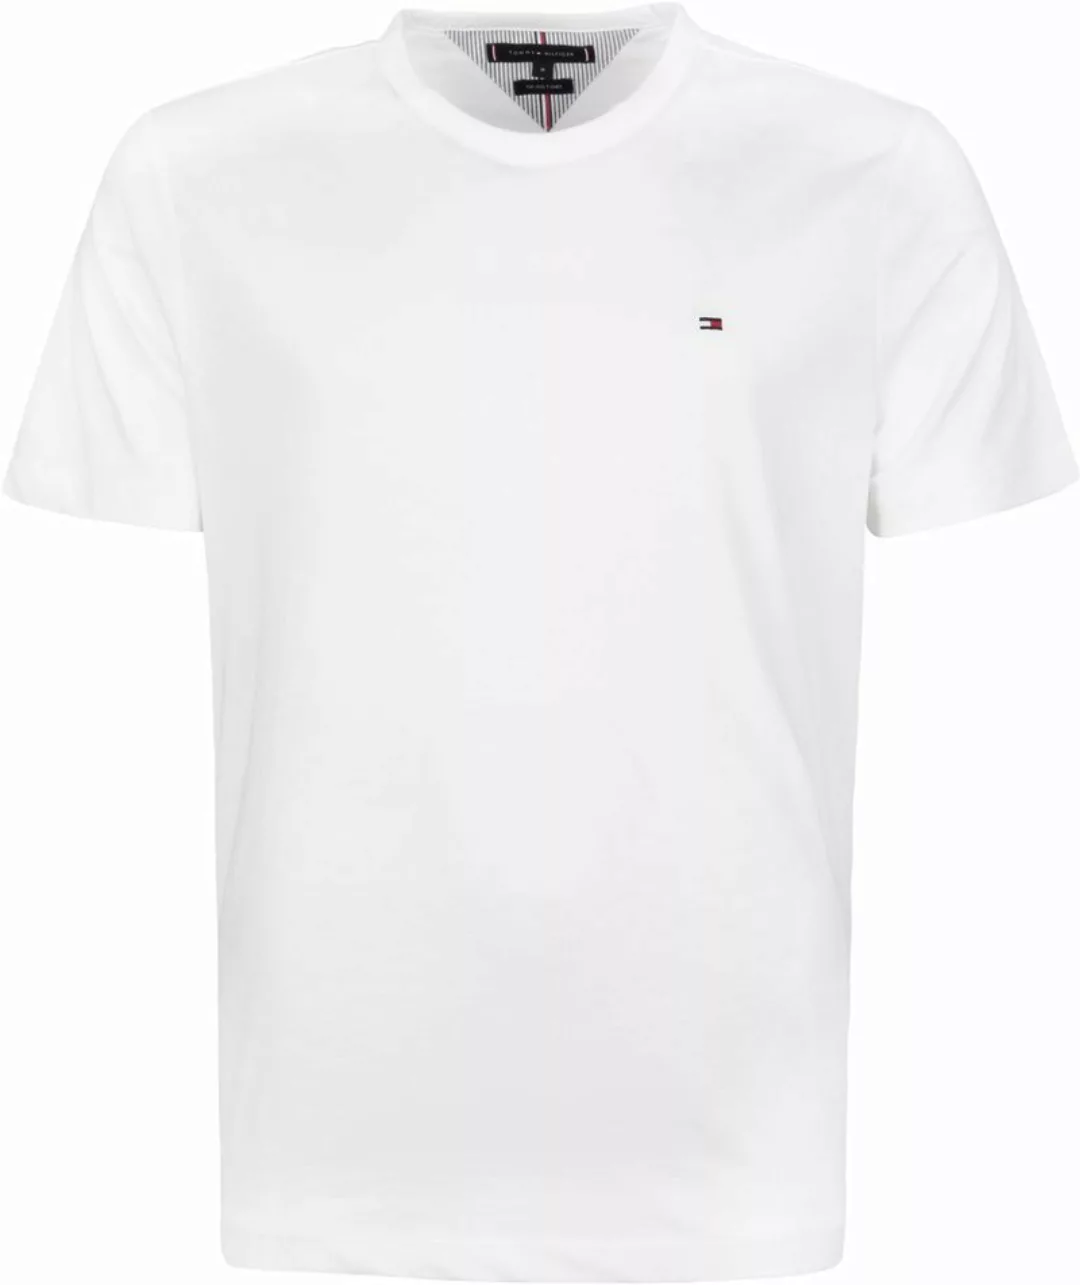 Tommy Hilfiger T-shirt 1985 Weiß - Größe S günstig online kaufen